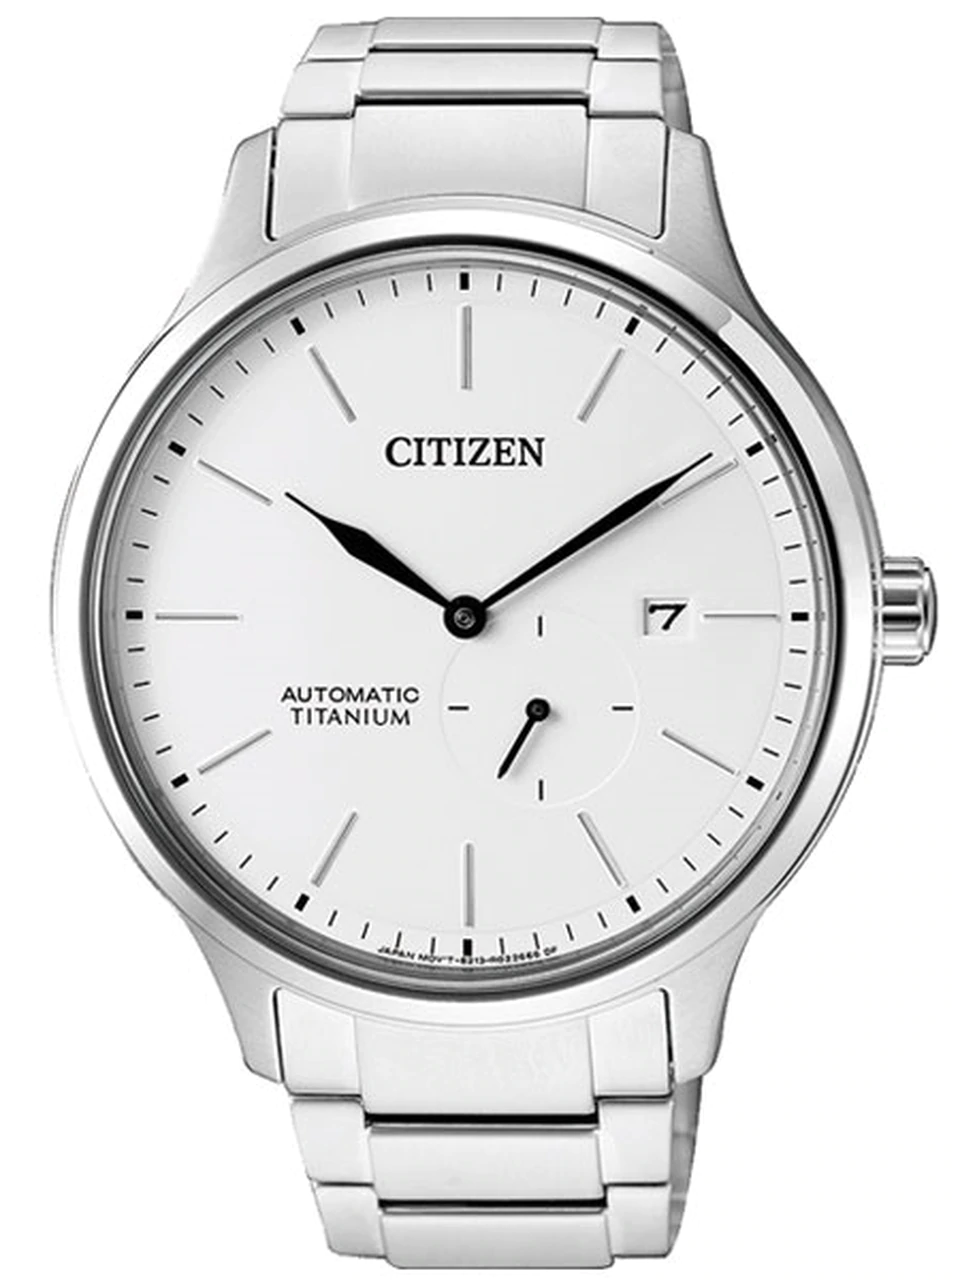 Citizen Automatic Titanium Watch (Model: NJ0090-81A)